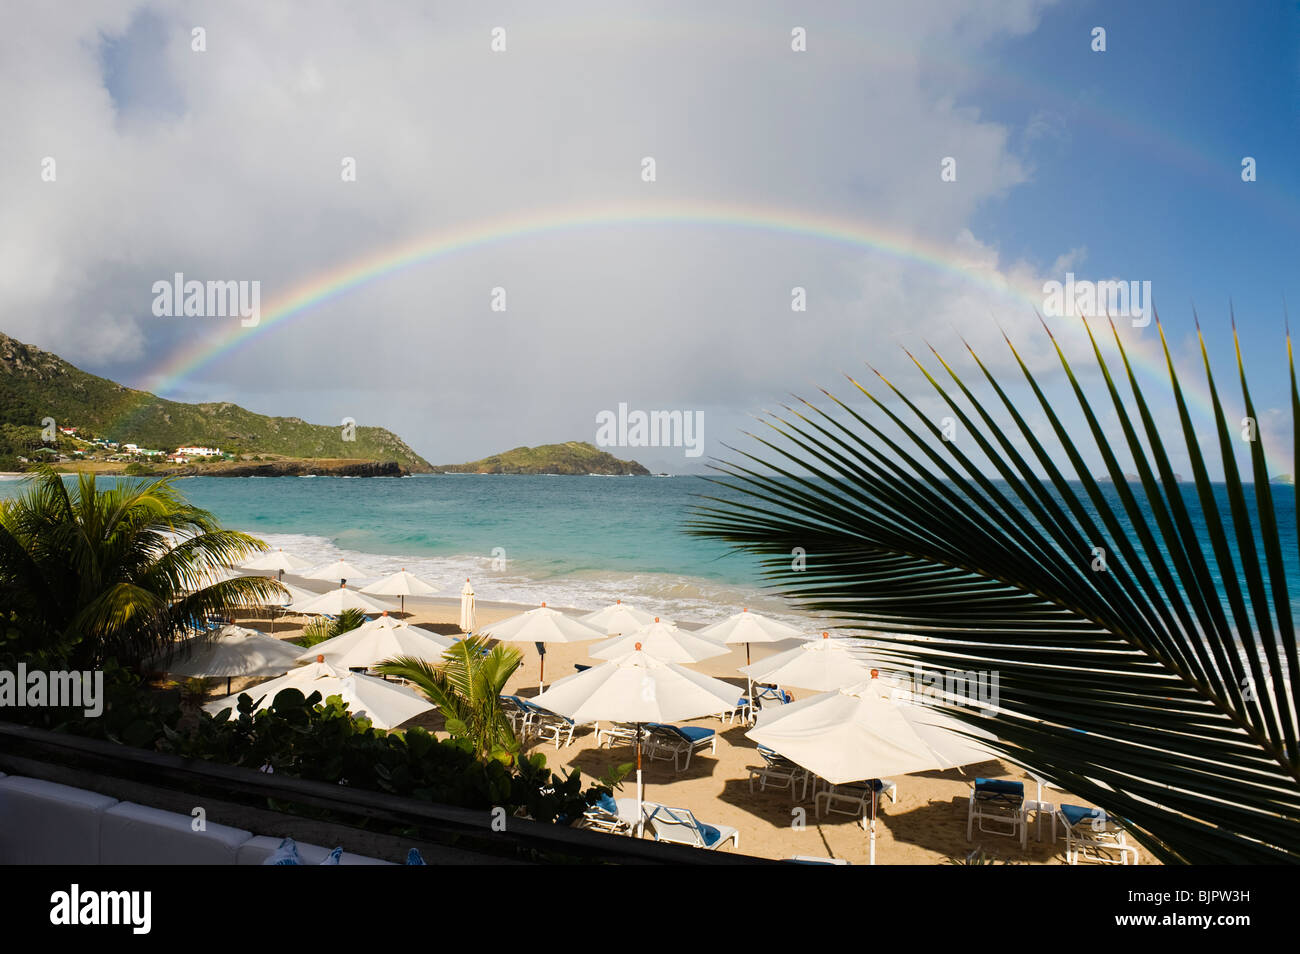 Rainbow over a beach in the Caribbean Stock Photo